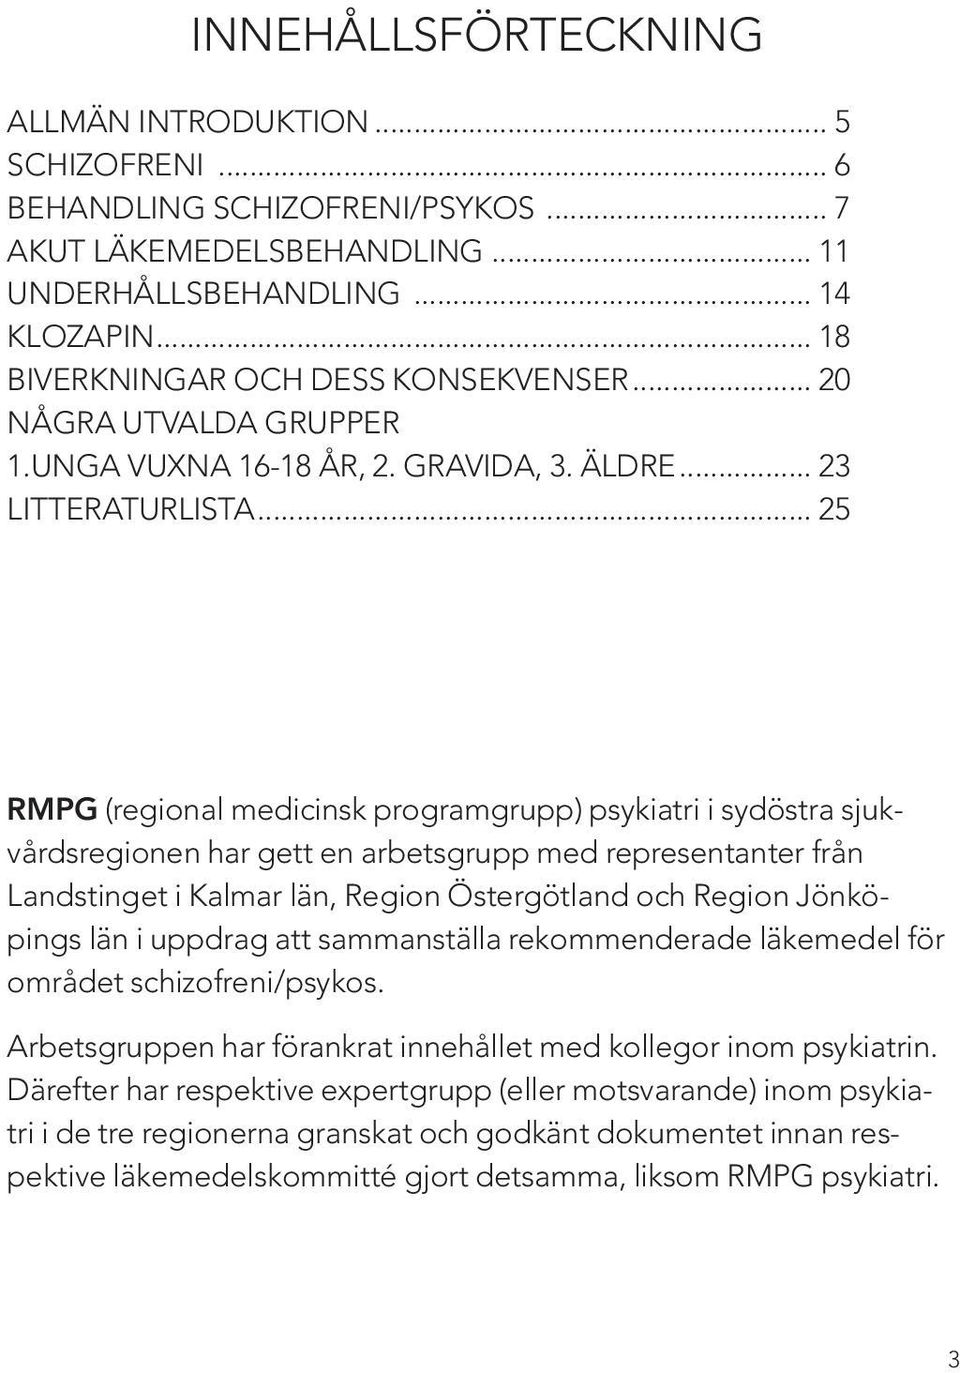 .. 25 RMPG (regional medicinsk programgrupp) psykiatri i sydöstra sjukvårdsregionen har gett en arbetsgrupp med representanter från Landstinget i Kalmar län, Region Östergötland och Region Jönköpings